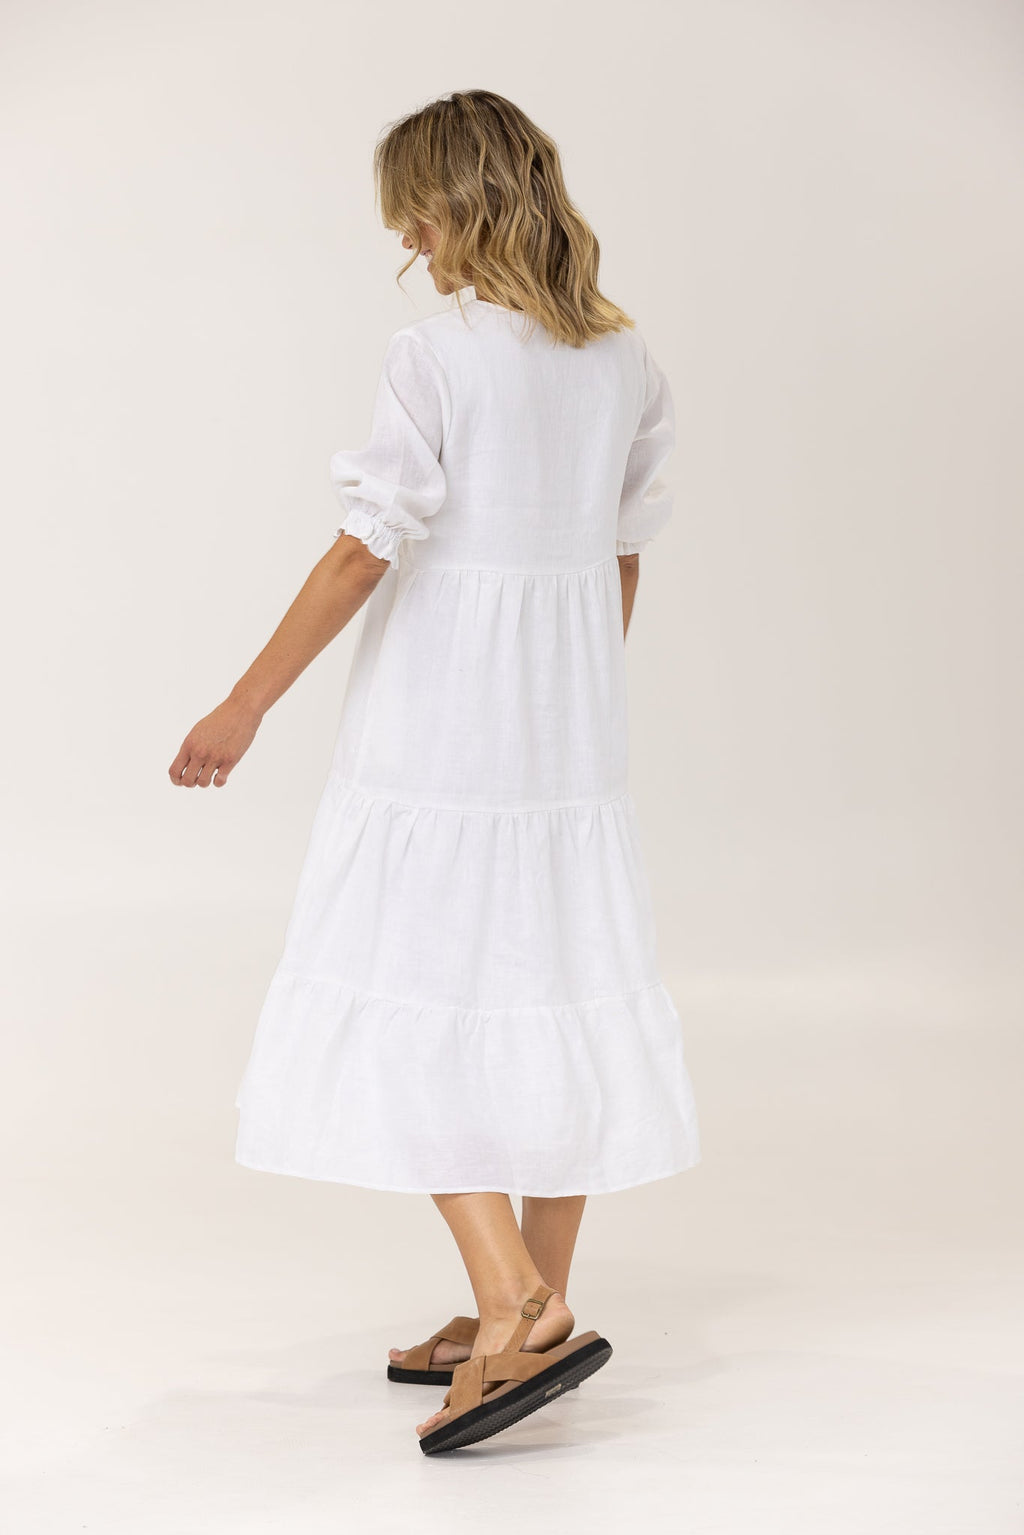 ALLEGRA LINEN DRESS - White